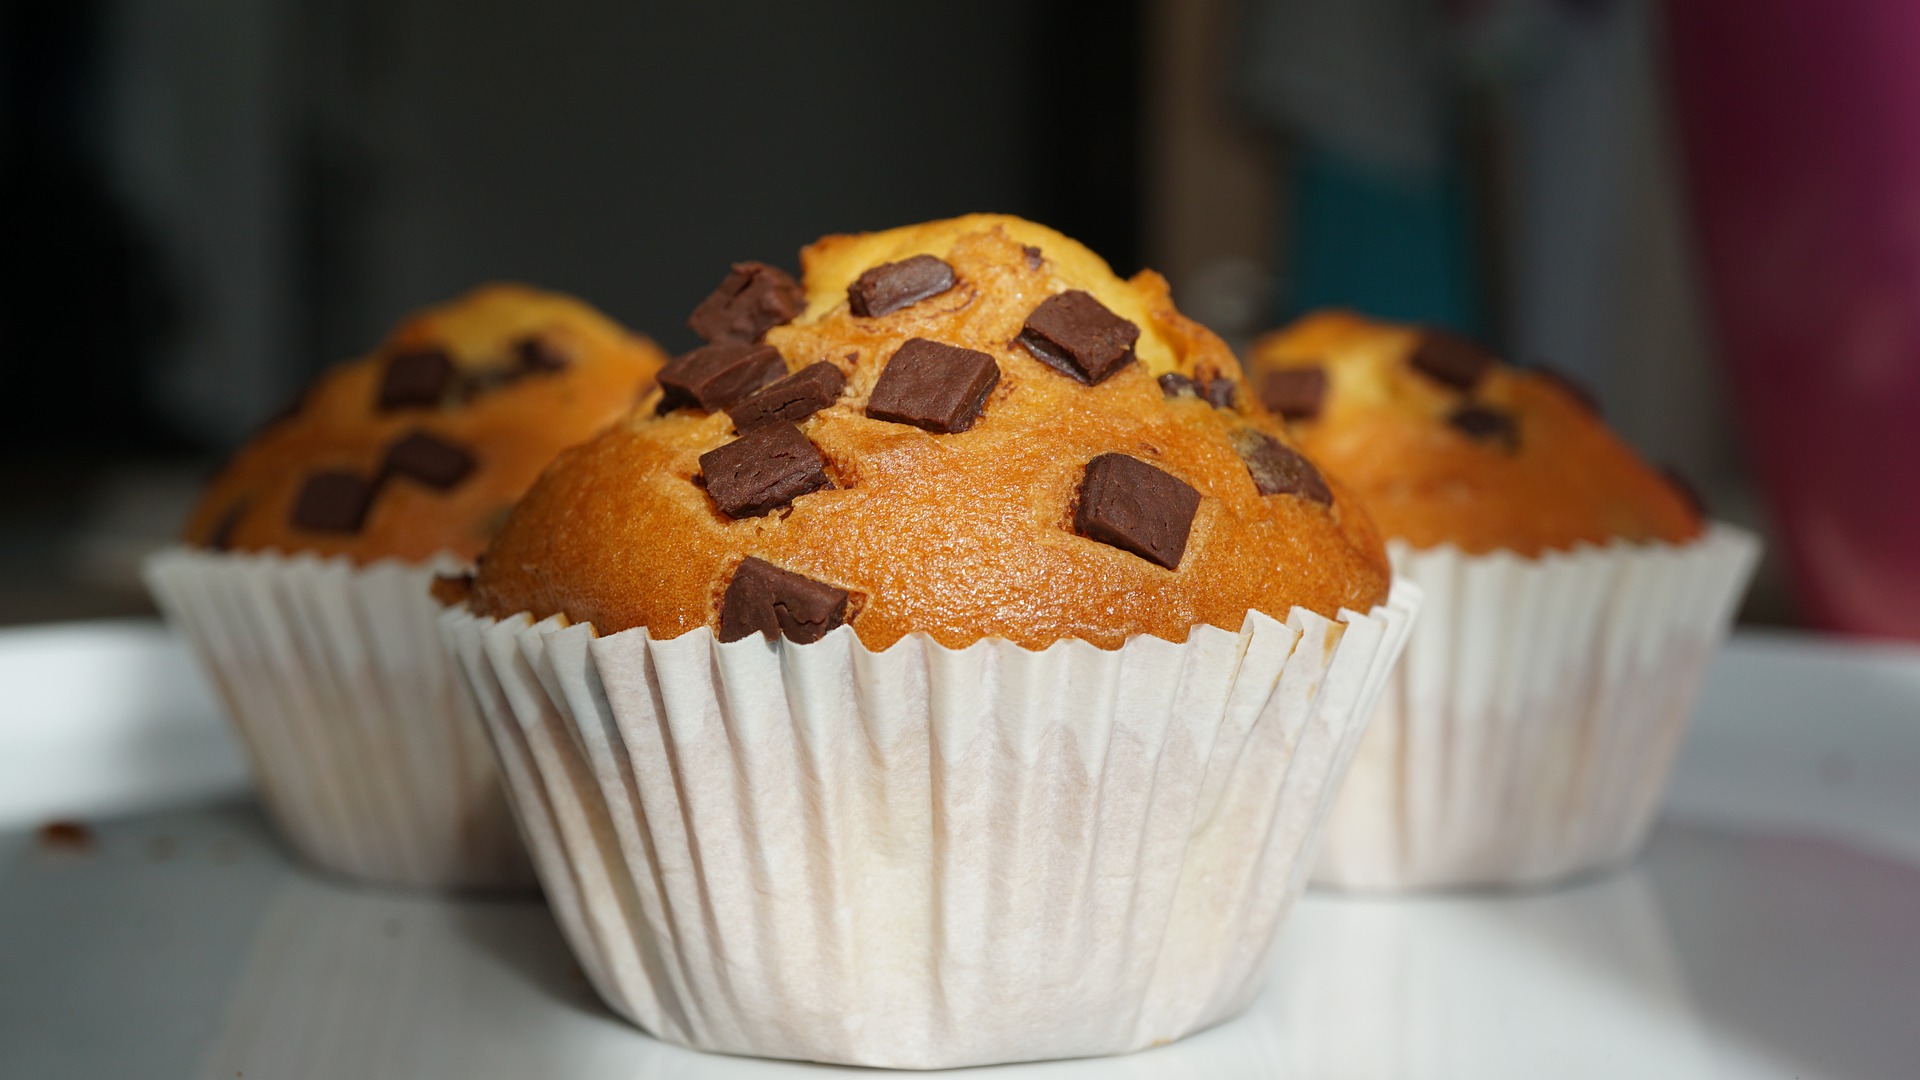 muffins de vainilla y chips de chocolate, muffins de vainilla y pepitas de chocolate, muffins ingleses